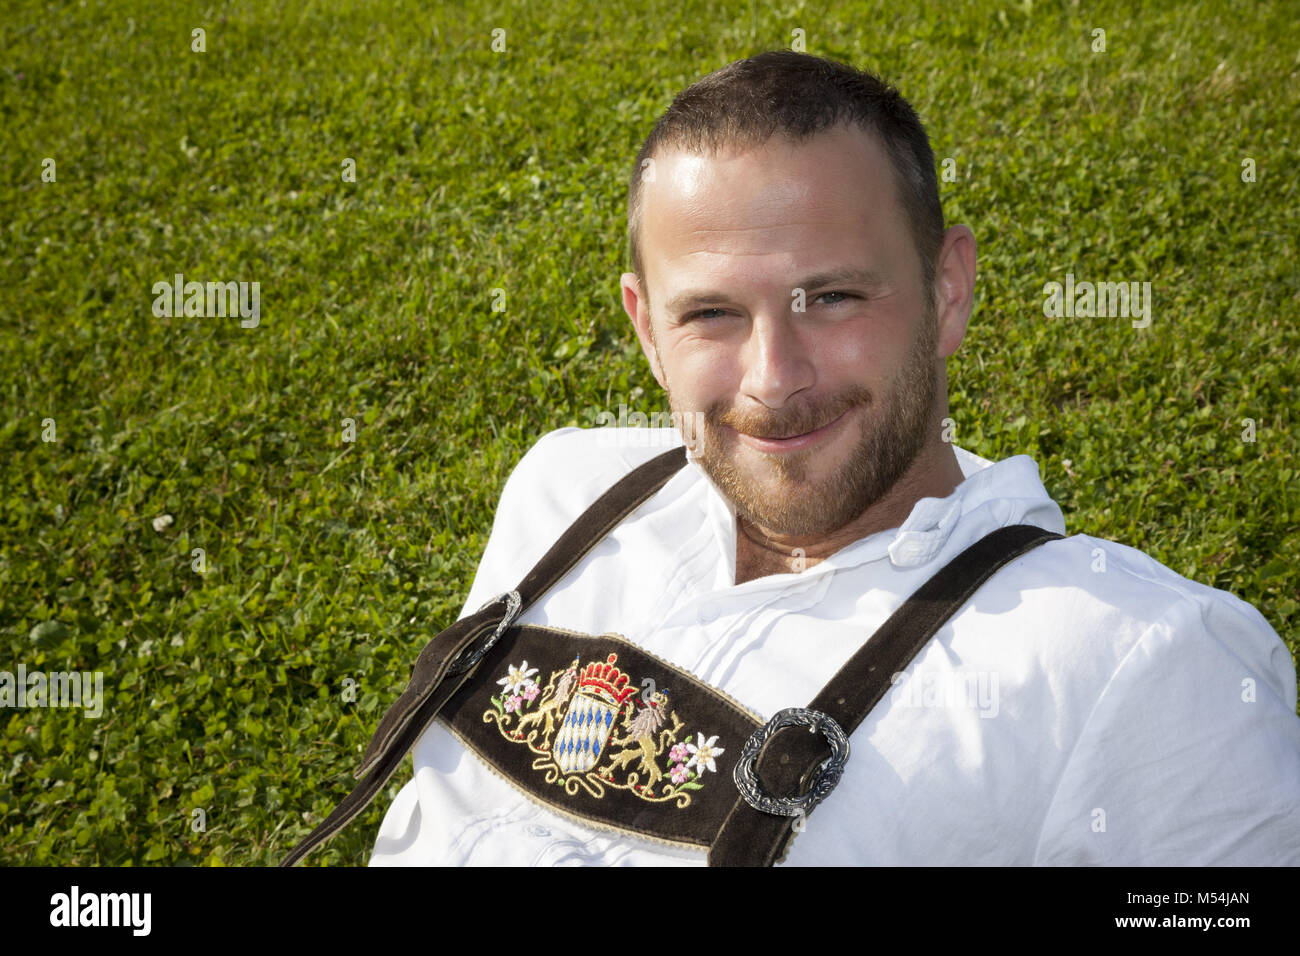 Bayerischer tradition Mann im Gras Stockfoto